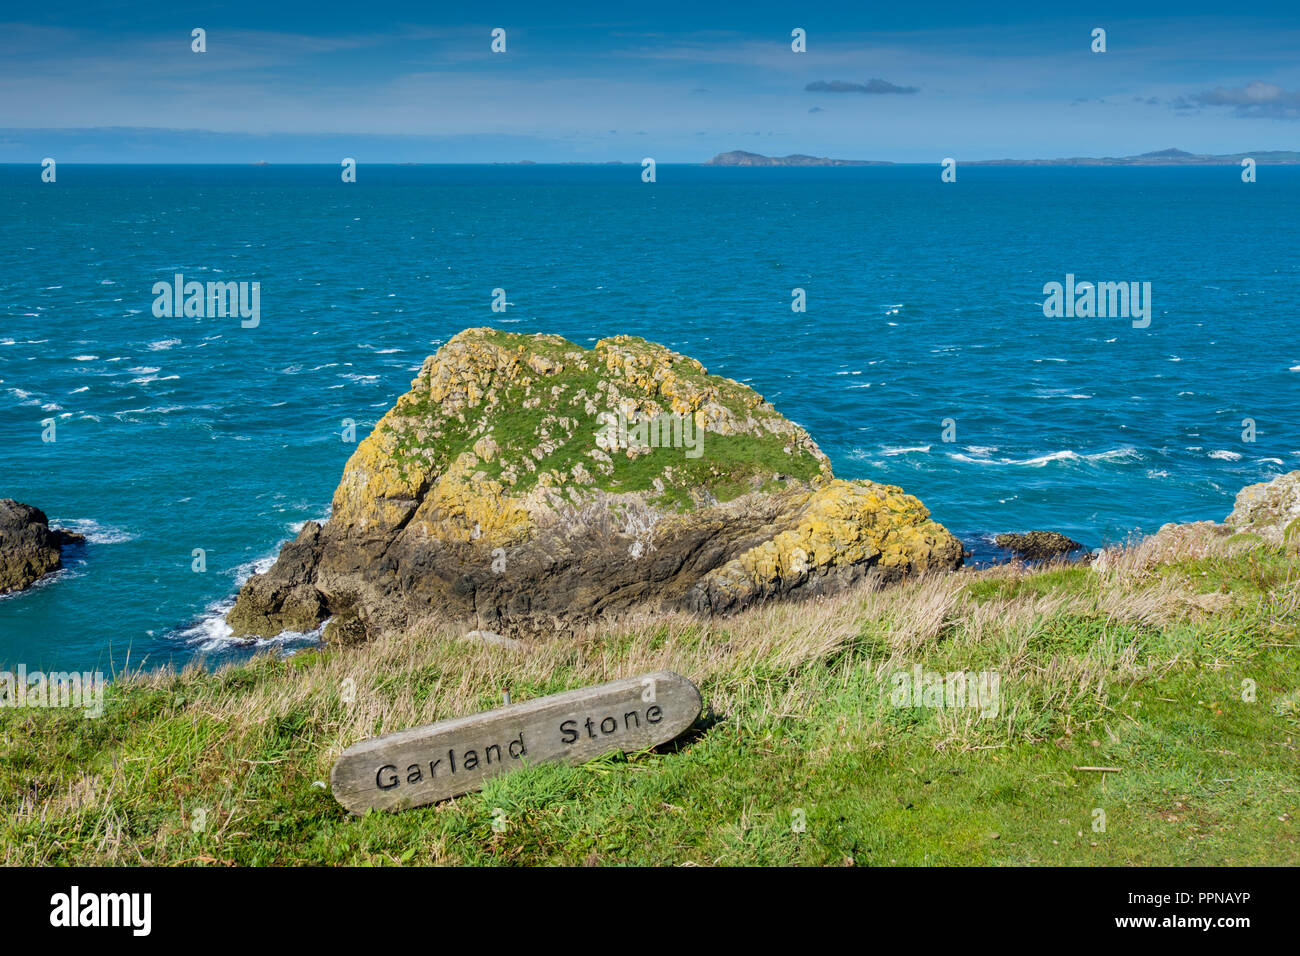 La pierre sur l'île de Skomer Garland, Pembrokeshire, Pays de Galles Banque D'Images